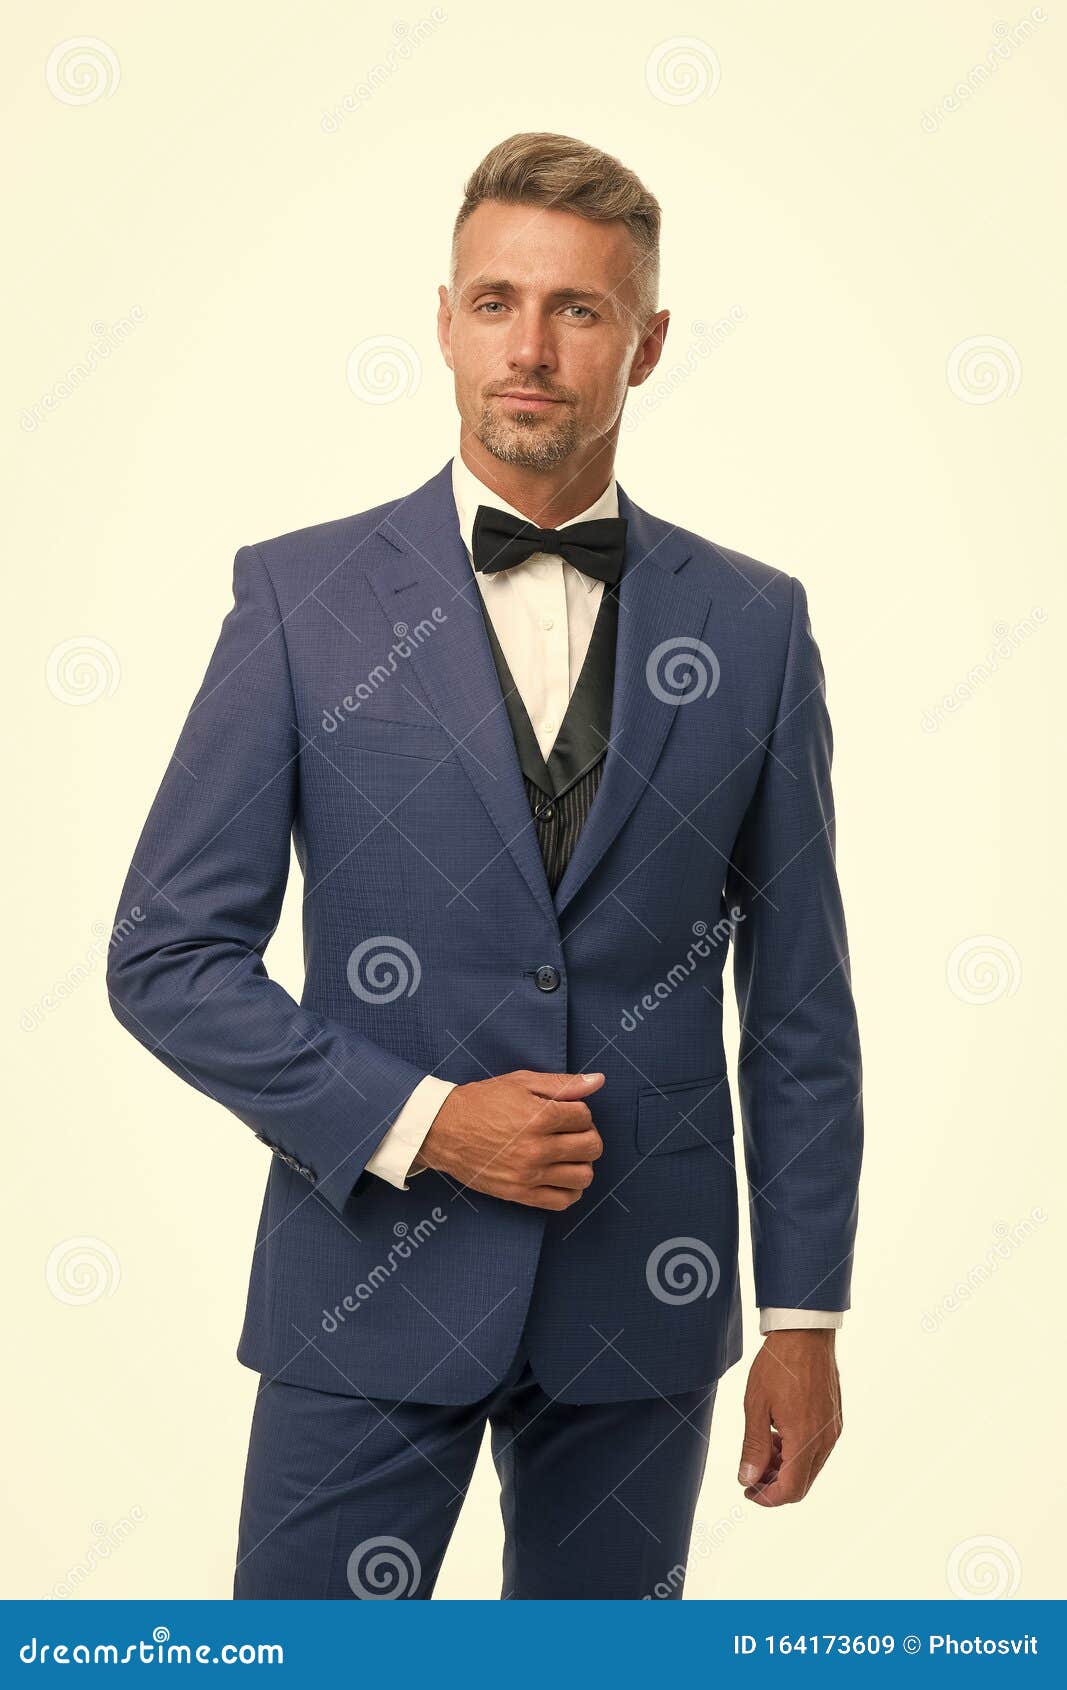 Maatpak Menswear Concept De Man Goed Gegromd, Een Handbediende Macho Met Zwarte Tuxedo Modeontwikkeling Van De Stock Afbeelding - Image of carrière, mannelijkheid: 164173609